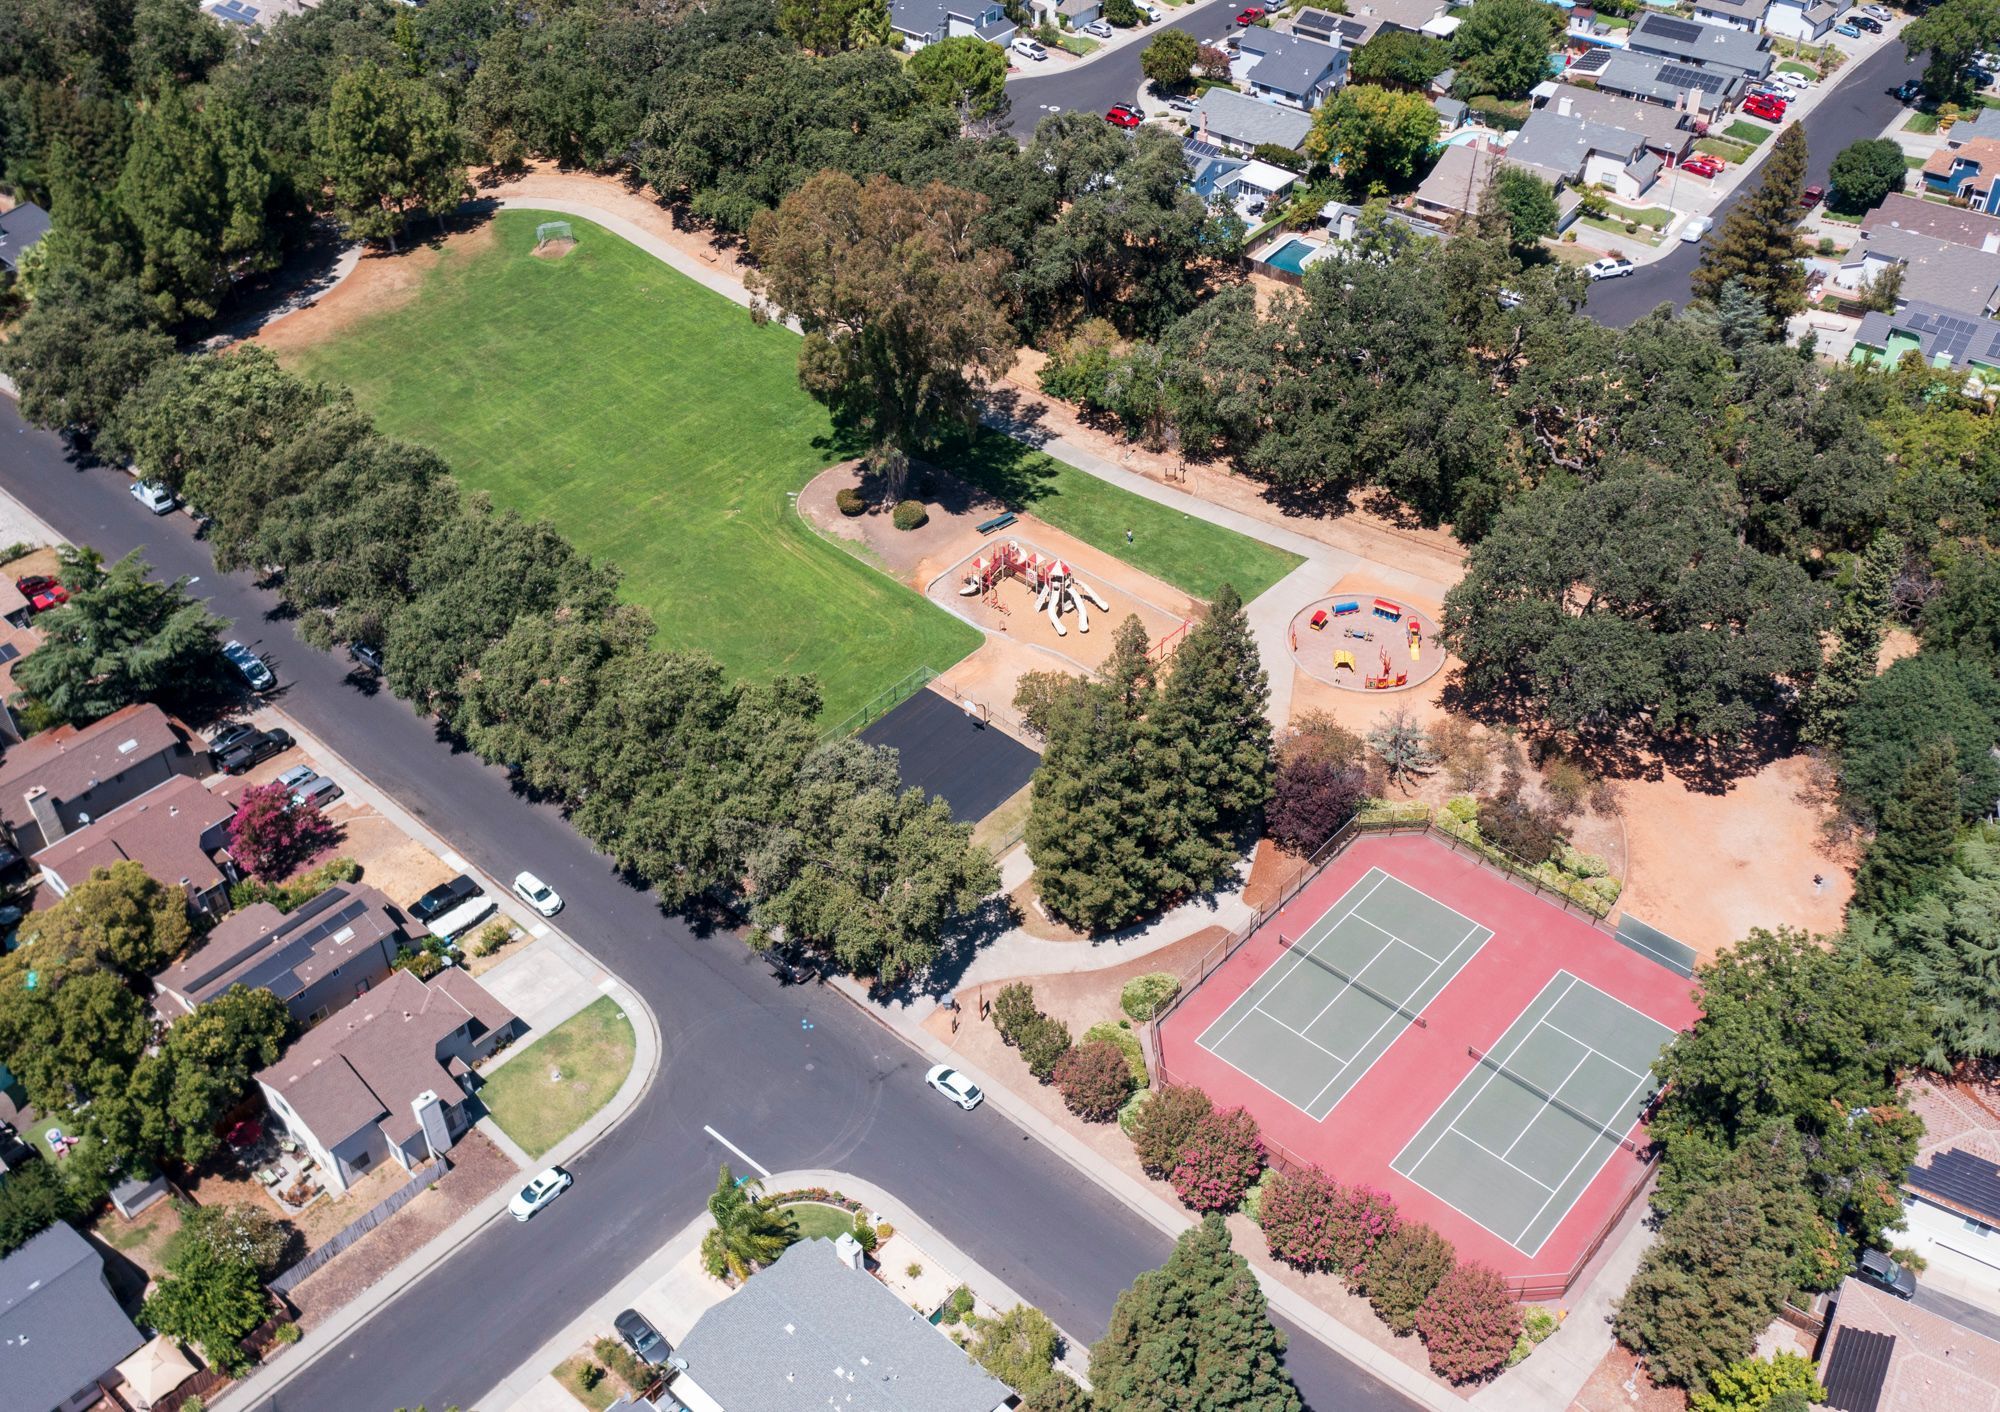 Hawkins Park Aerial view